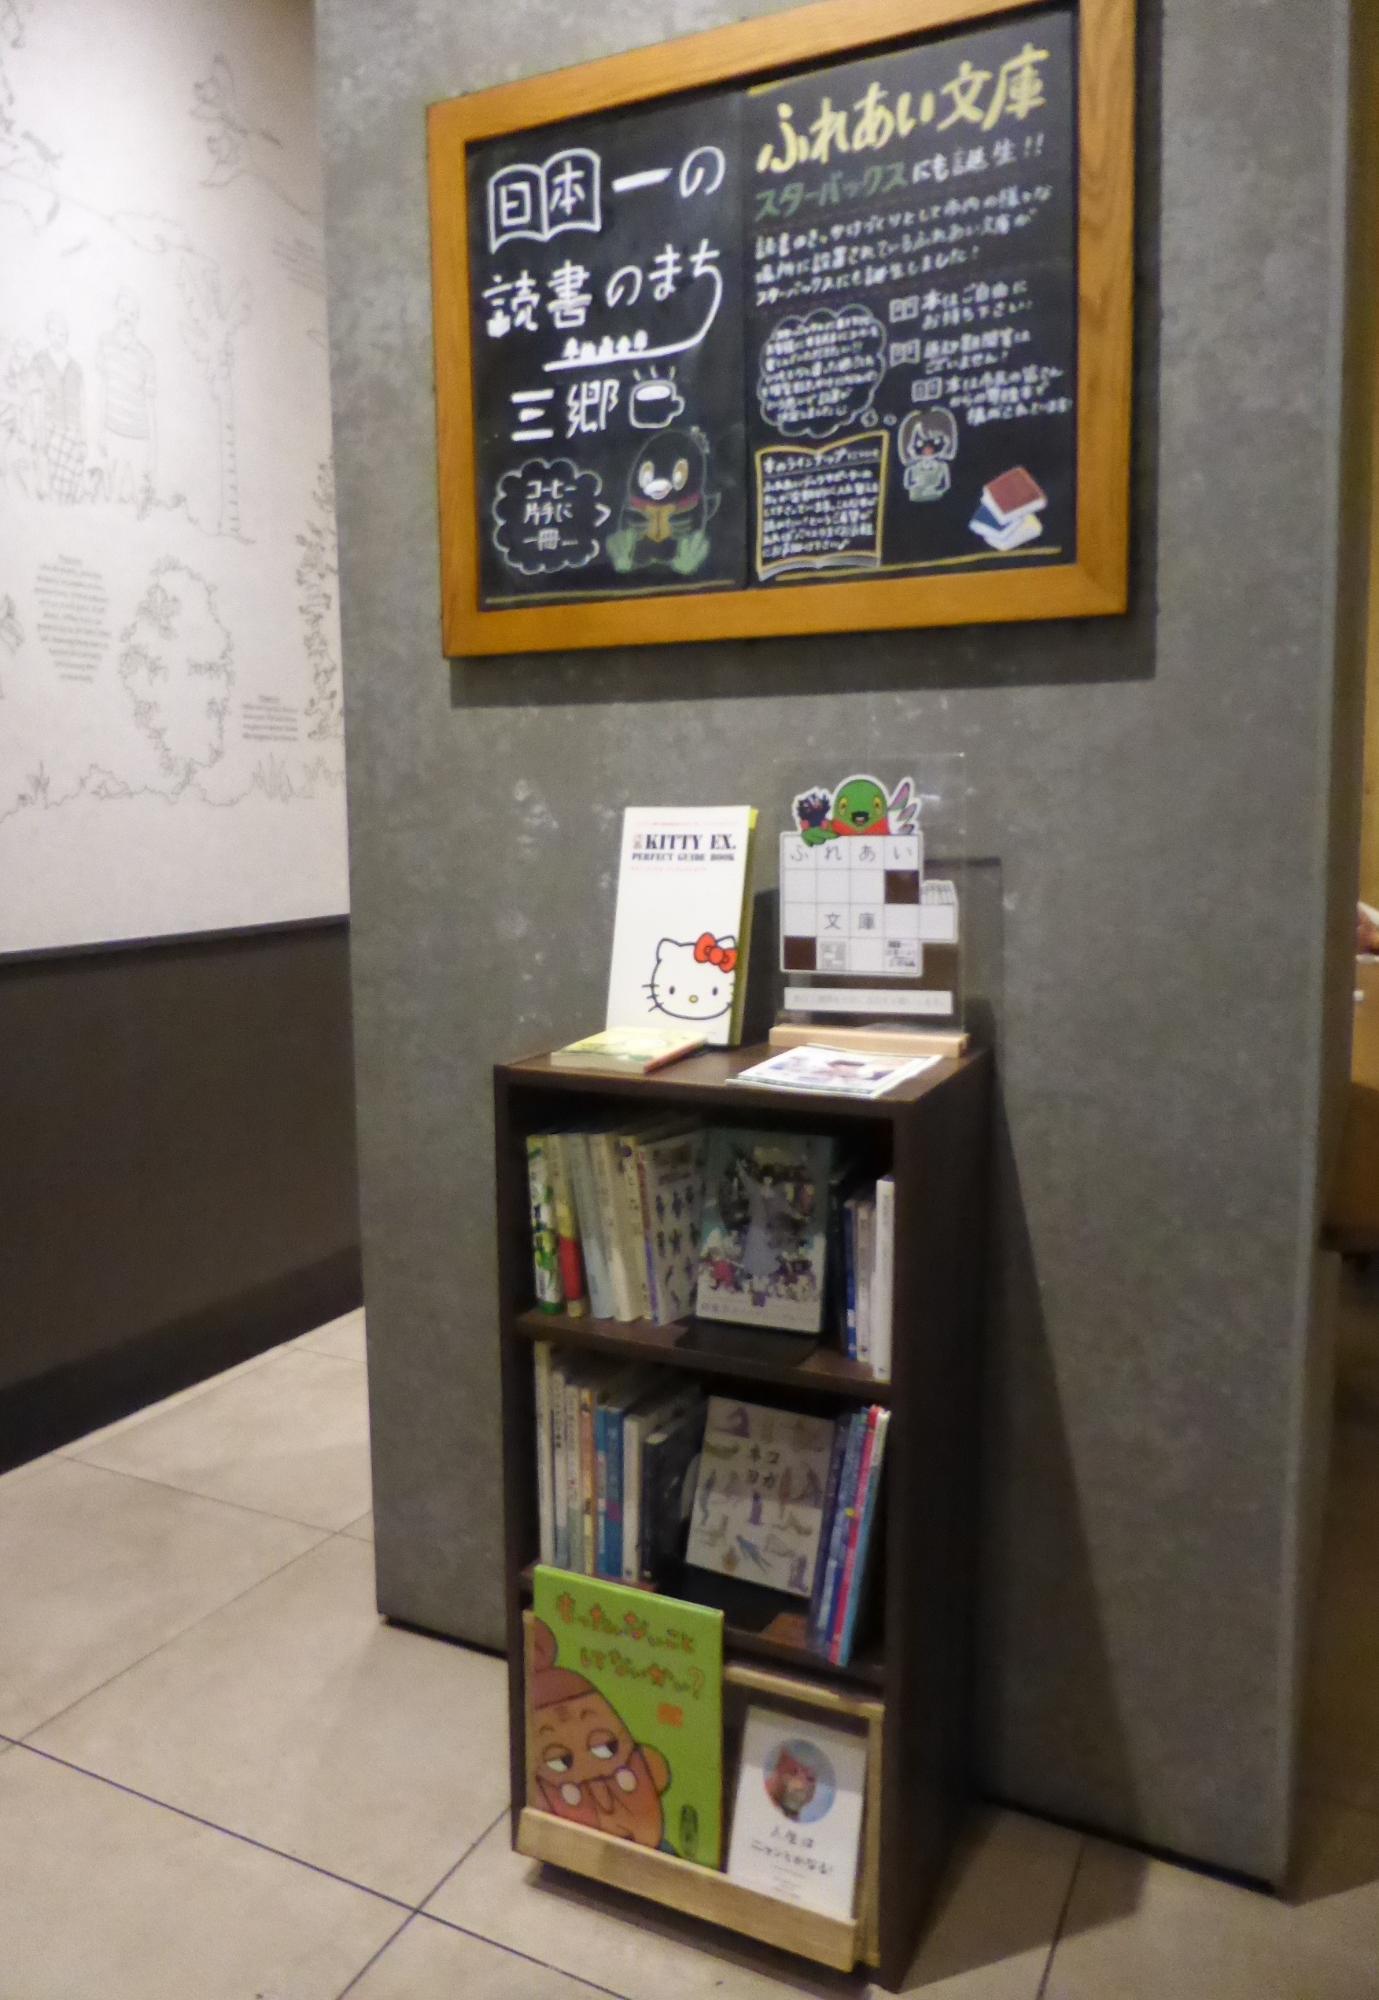 本棚に本が並んでいて本棚の上の黒板に日本一の読書のまち三郷のロゴマークとふれあい文庫について書いてある写真